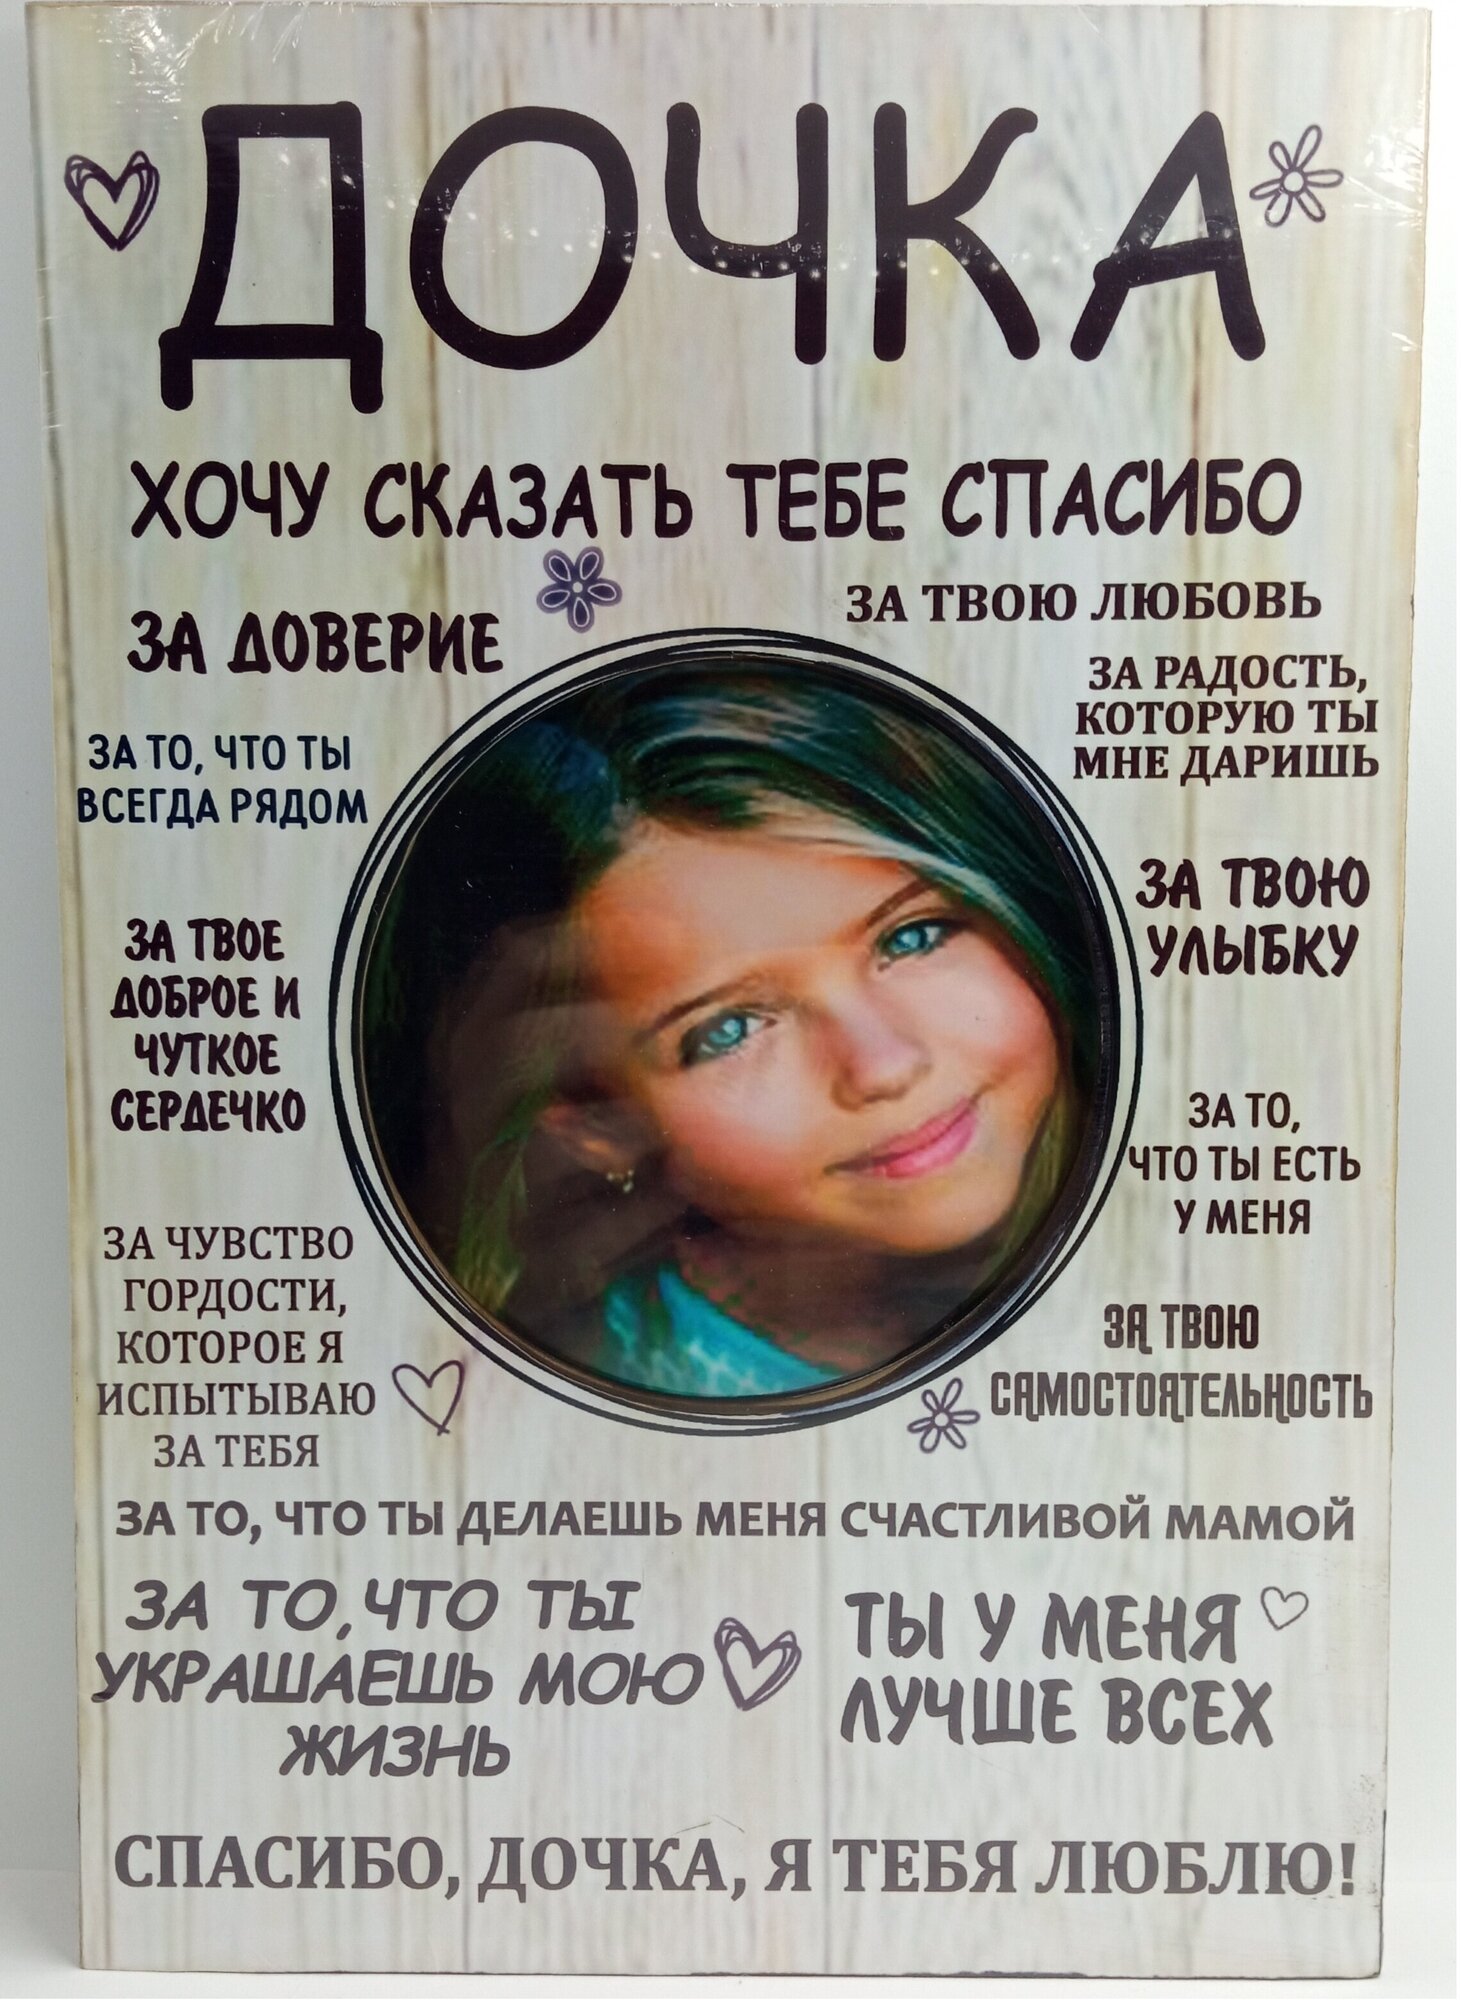 Фоторамка мотиватор постер подарок Дочке с надписями